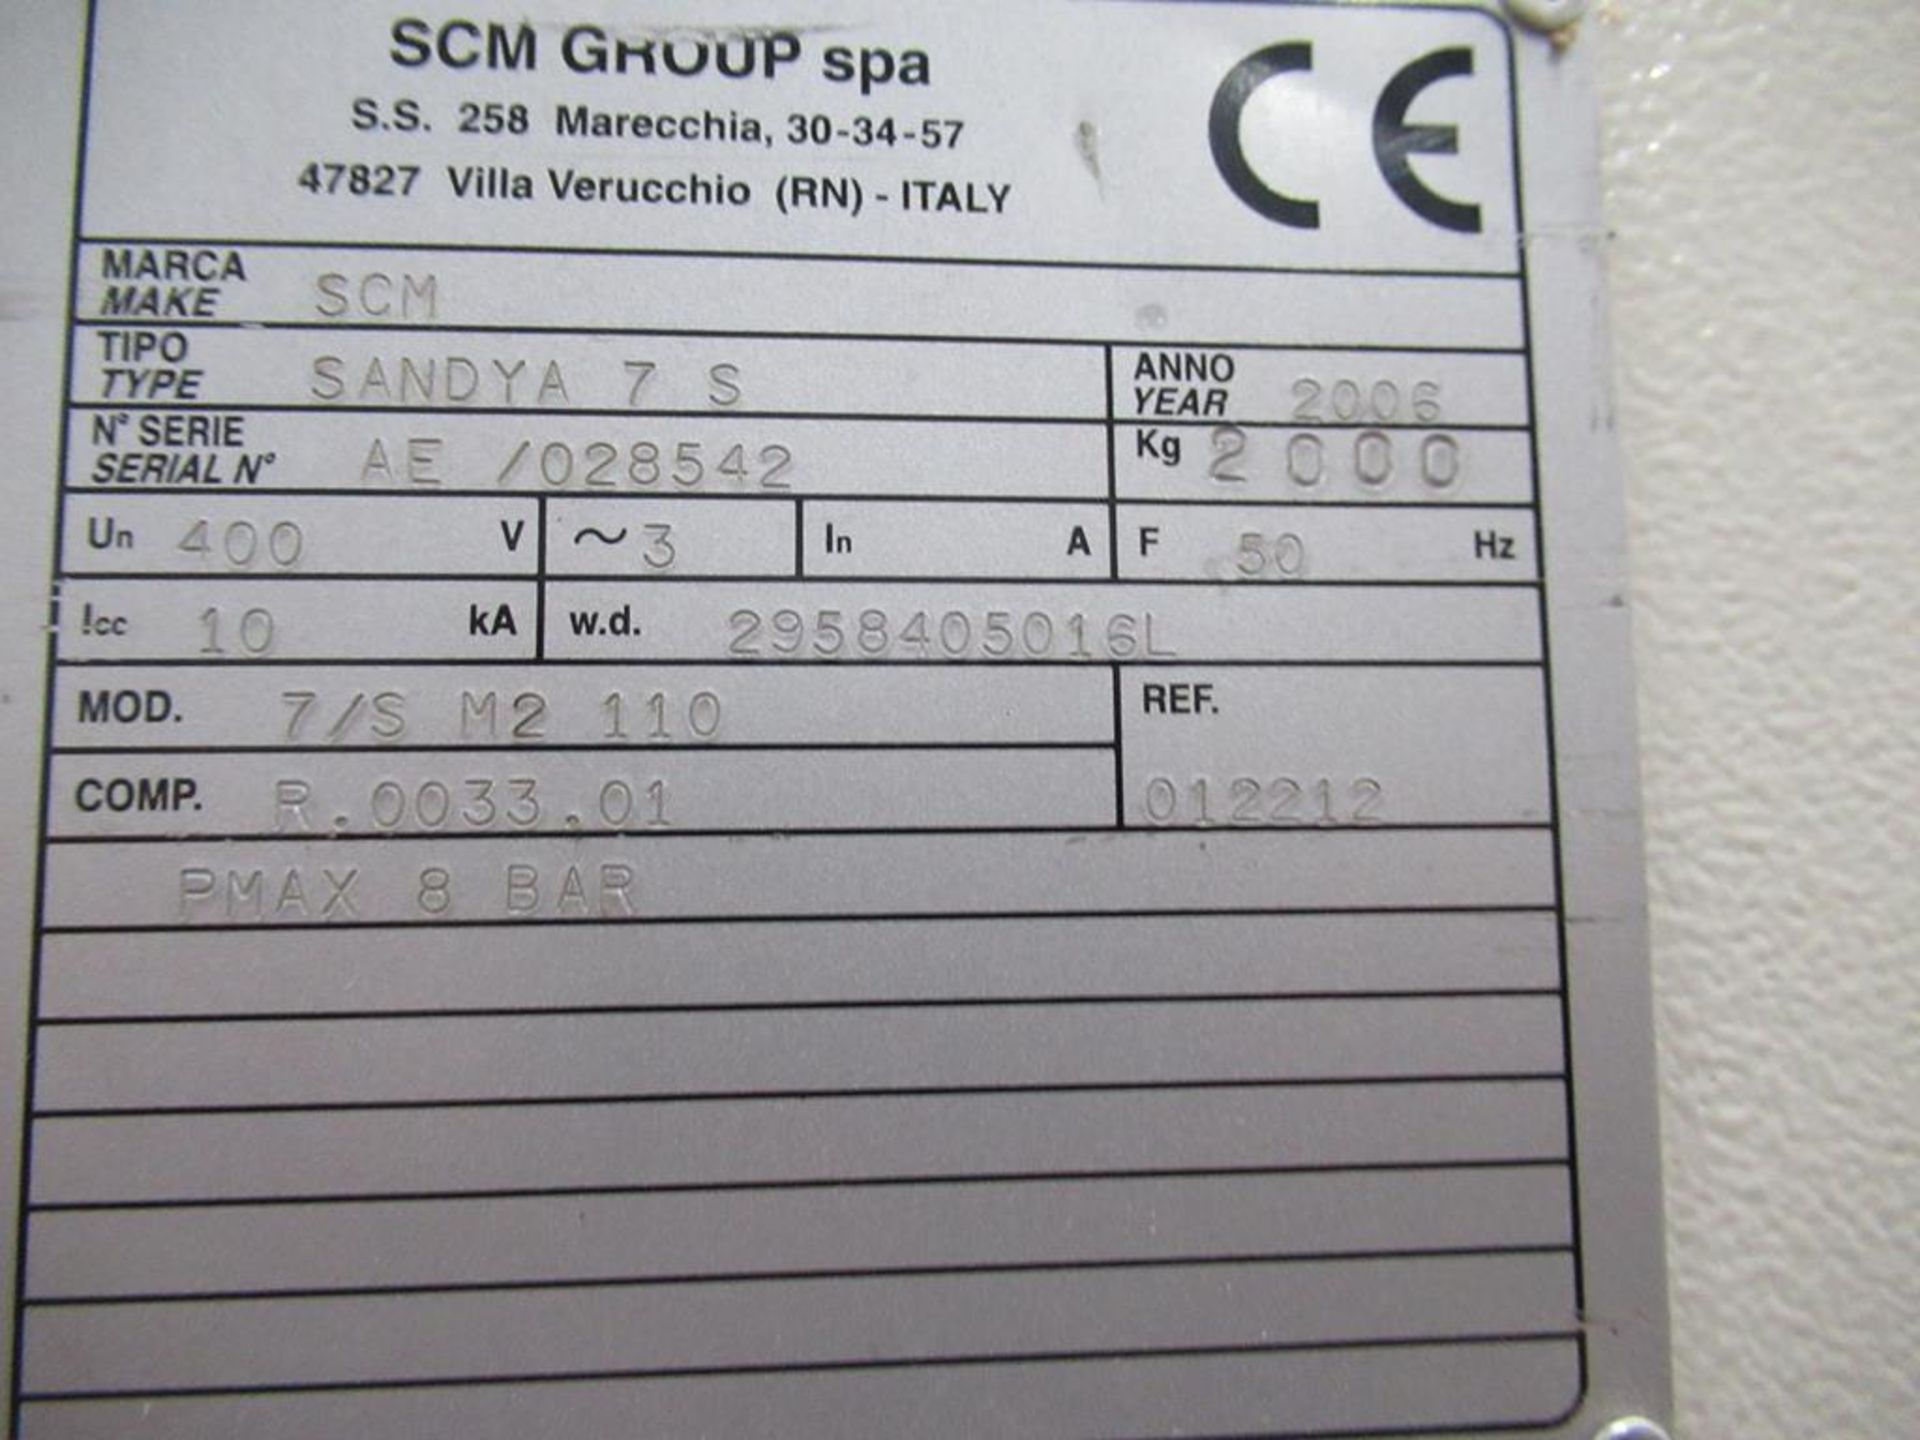 SCM Sandya 7/S M2 110 Wide Belt Sander - Image 11 of 11